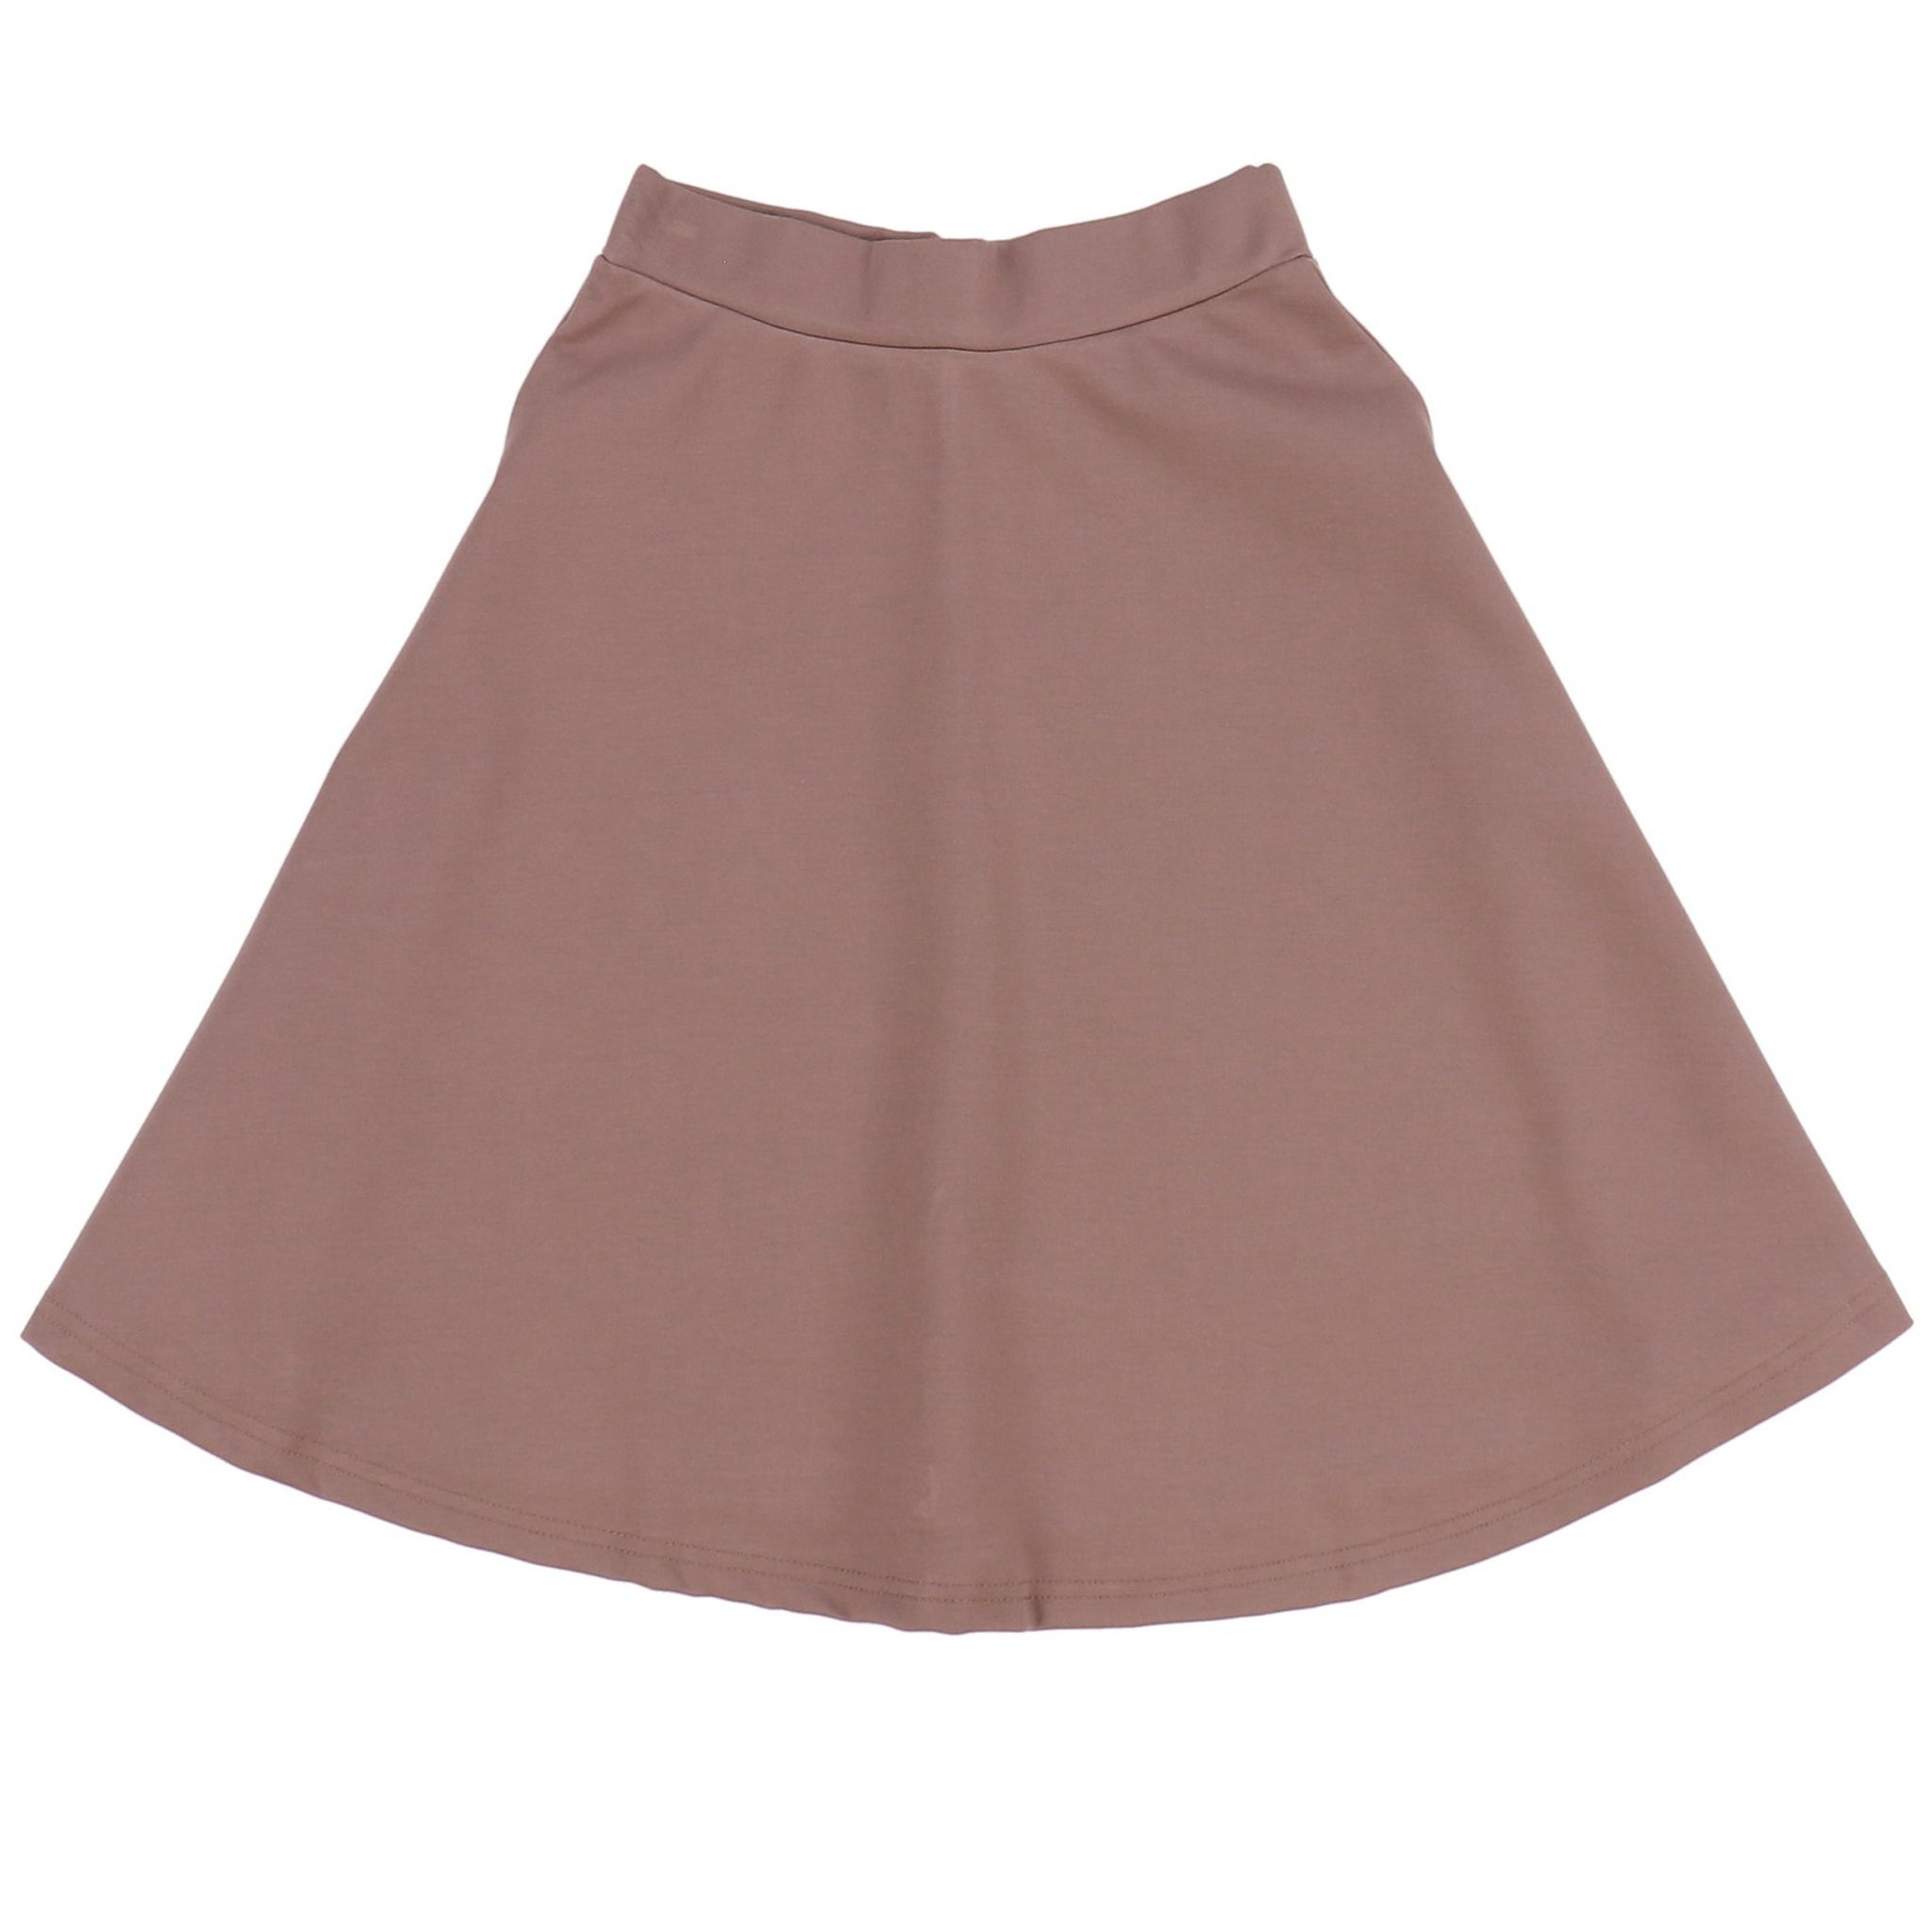 Bell Jersey Skirt - Kidichic